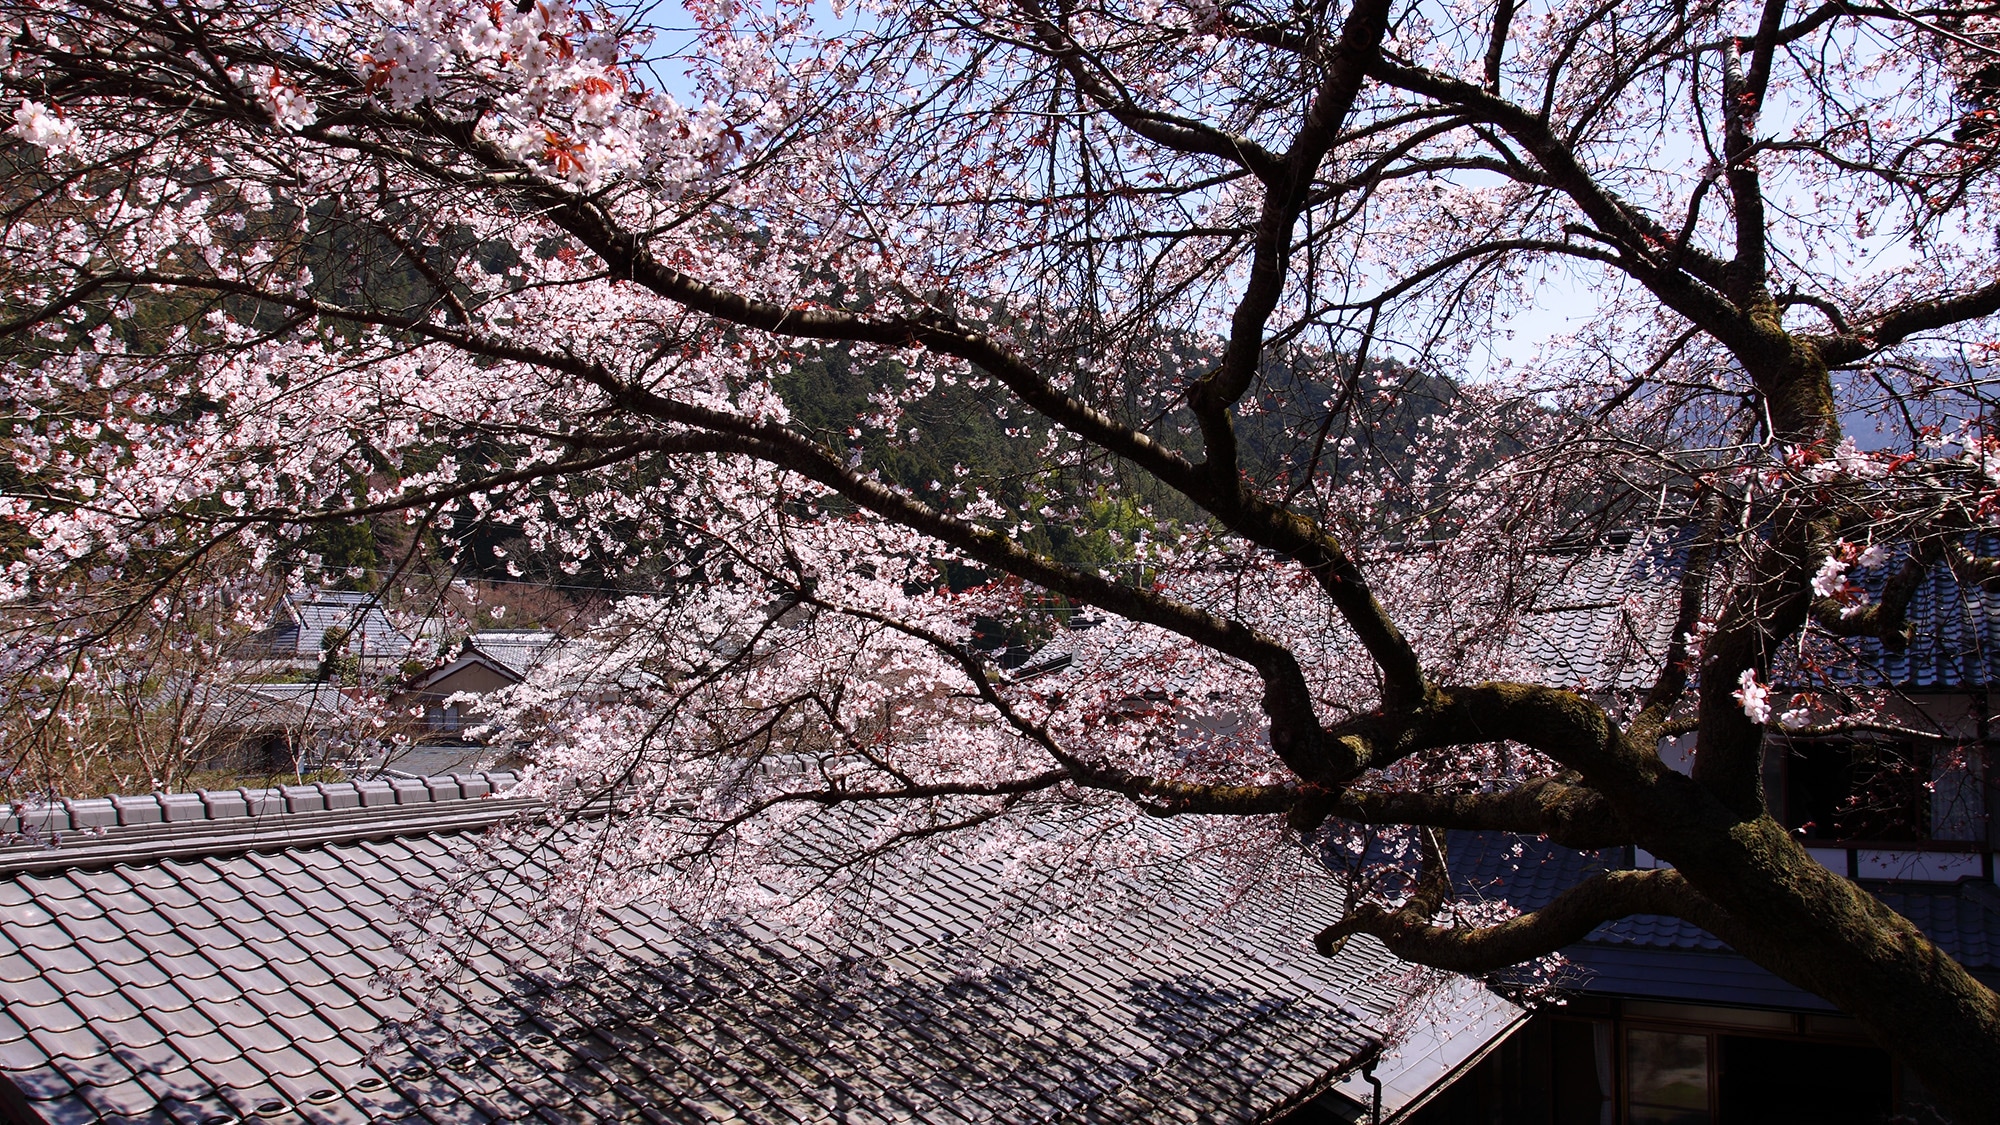 * [Courtyard] Pohon sakura juga ditanam di halaman.